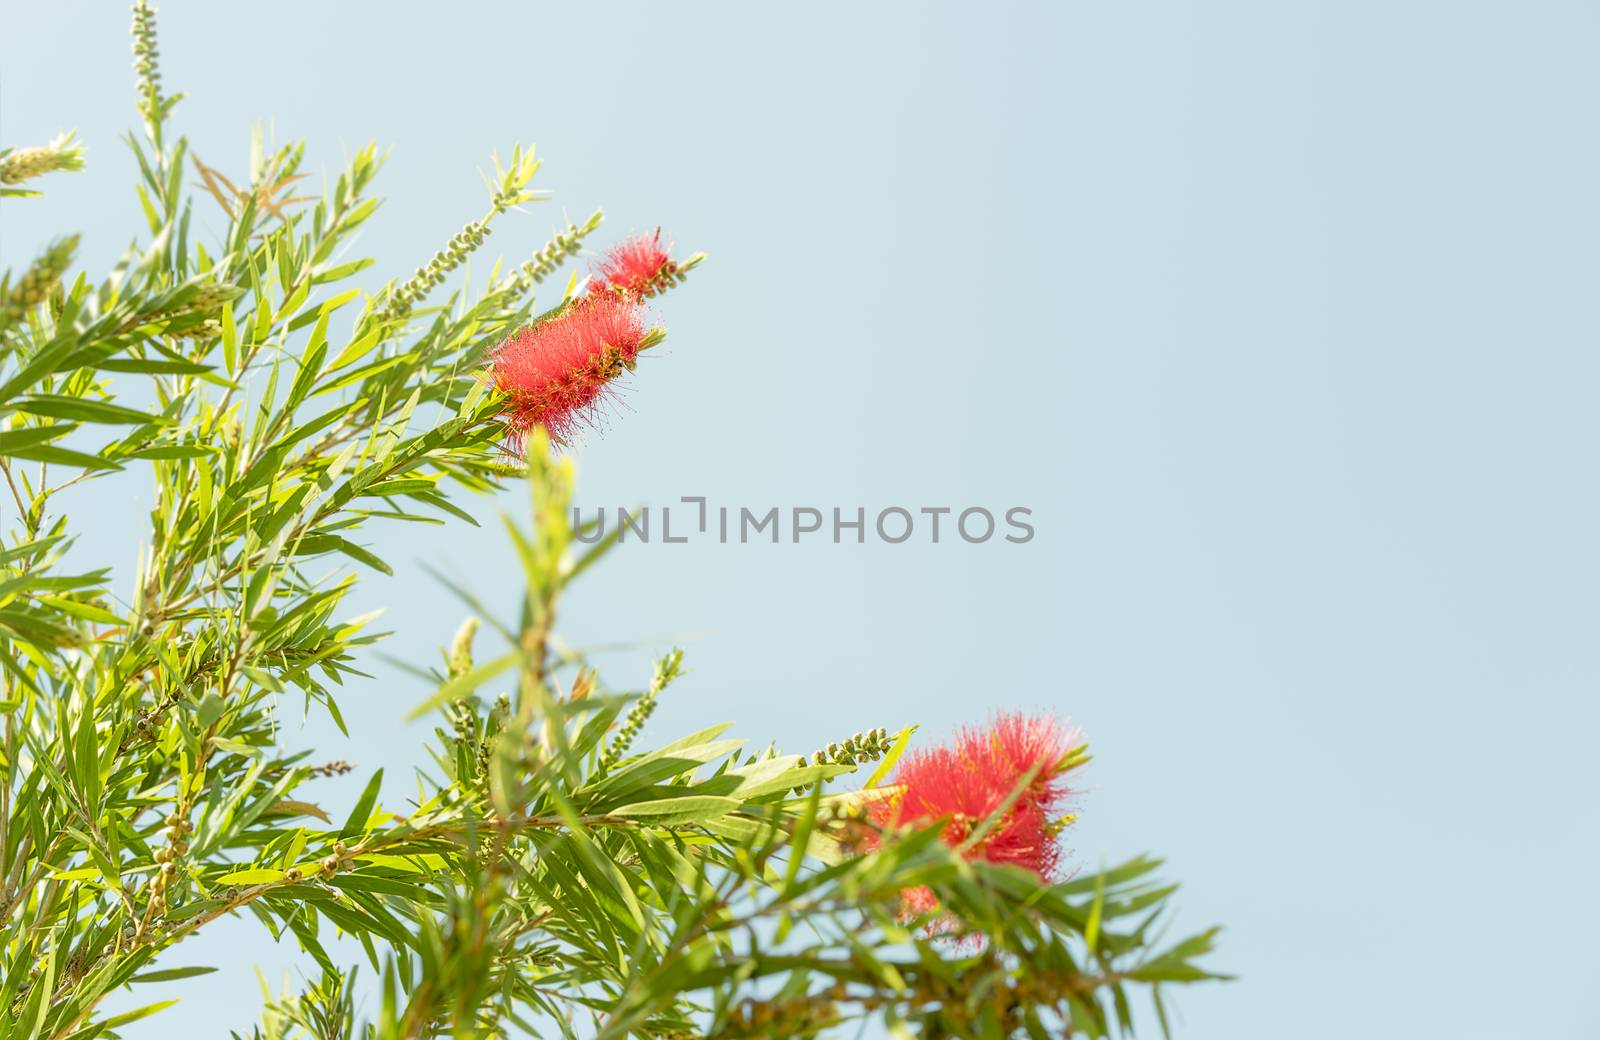 Red Australian wildflower Callistemon bottlebrush by sherj